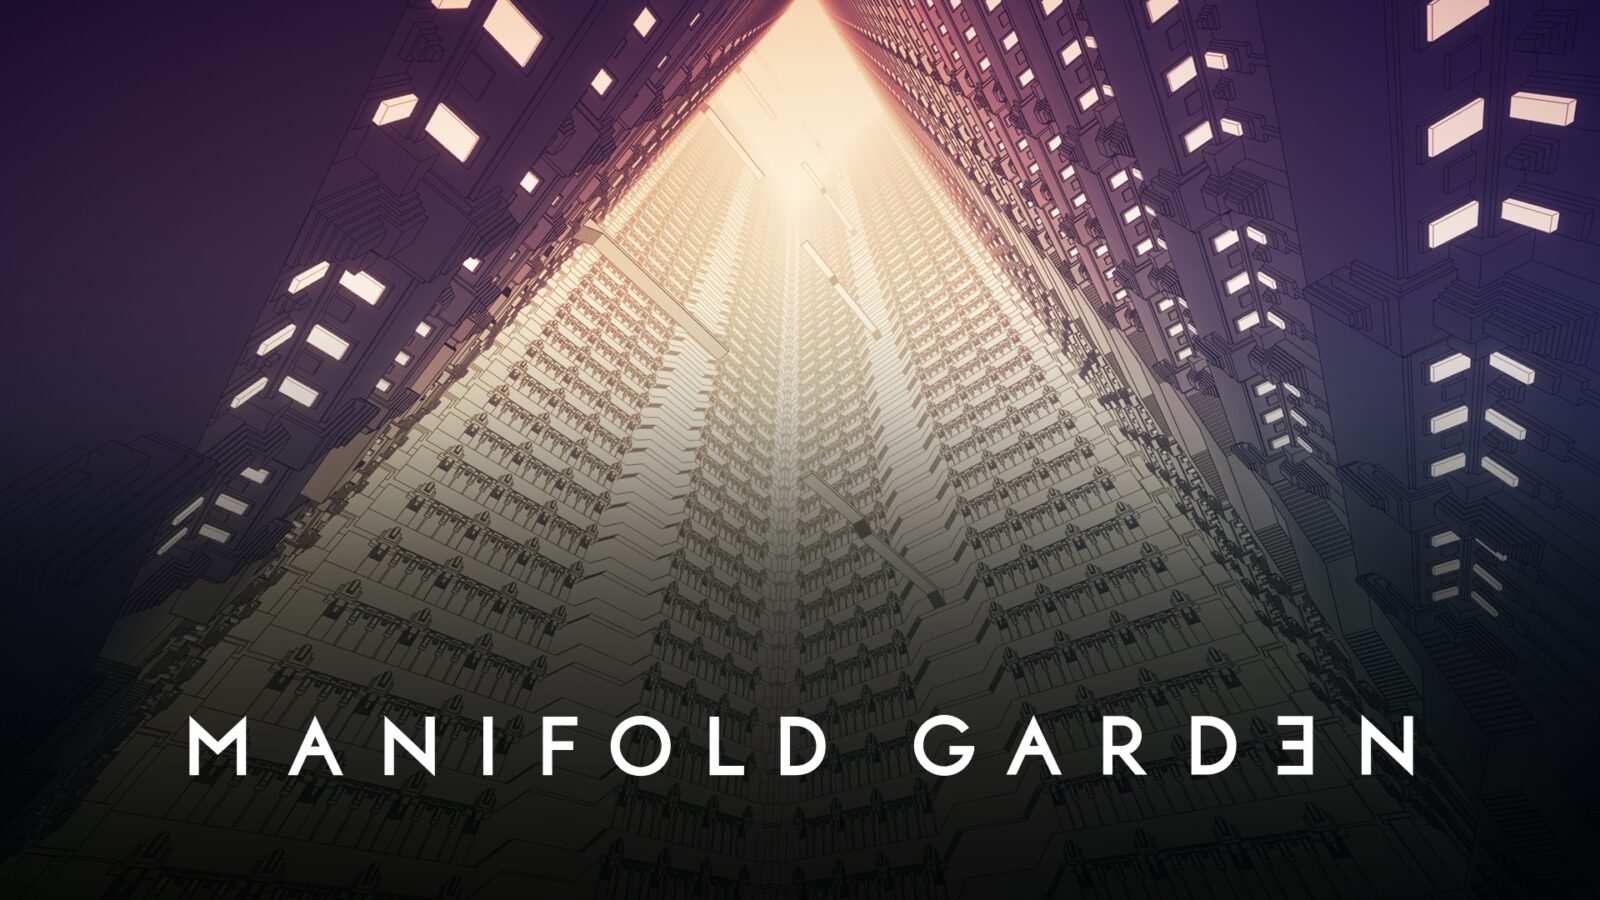 Manifold Garden - Uma questão de perspectiva